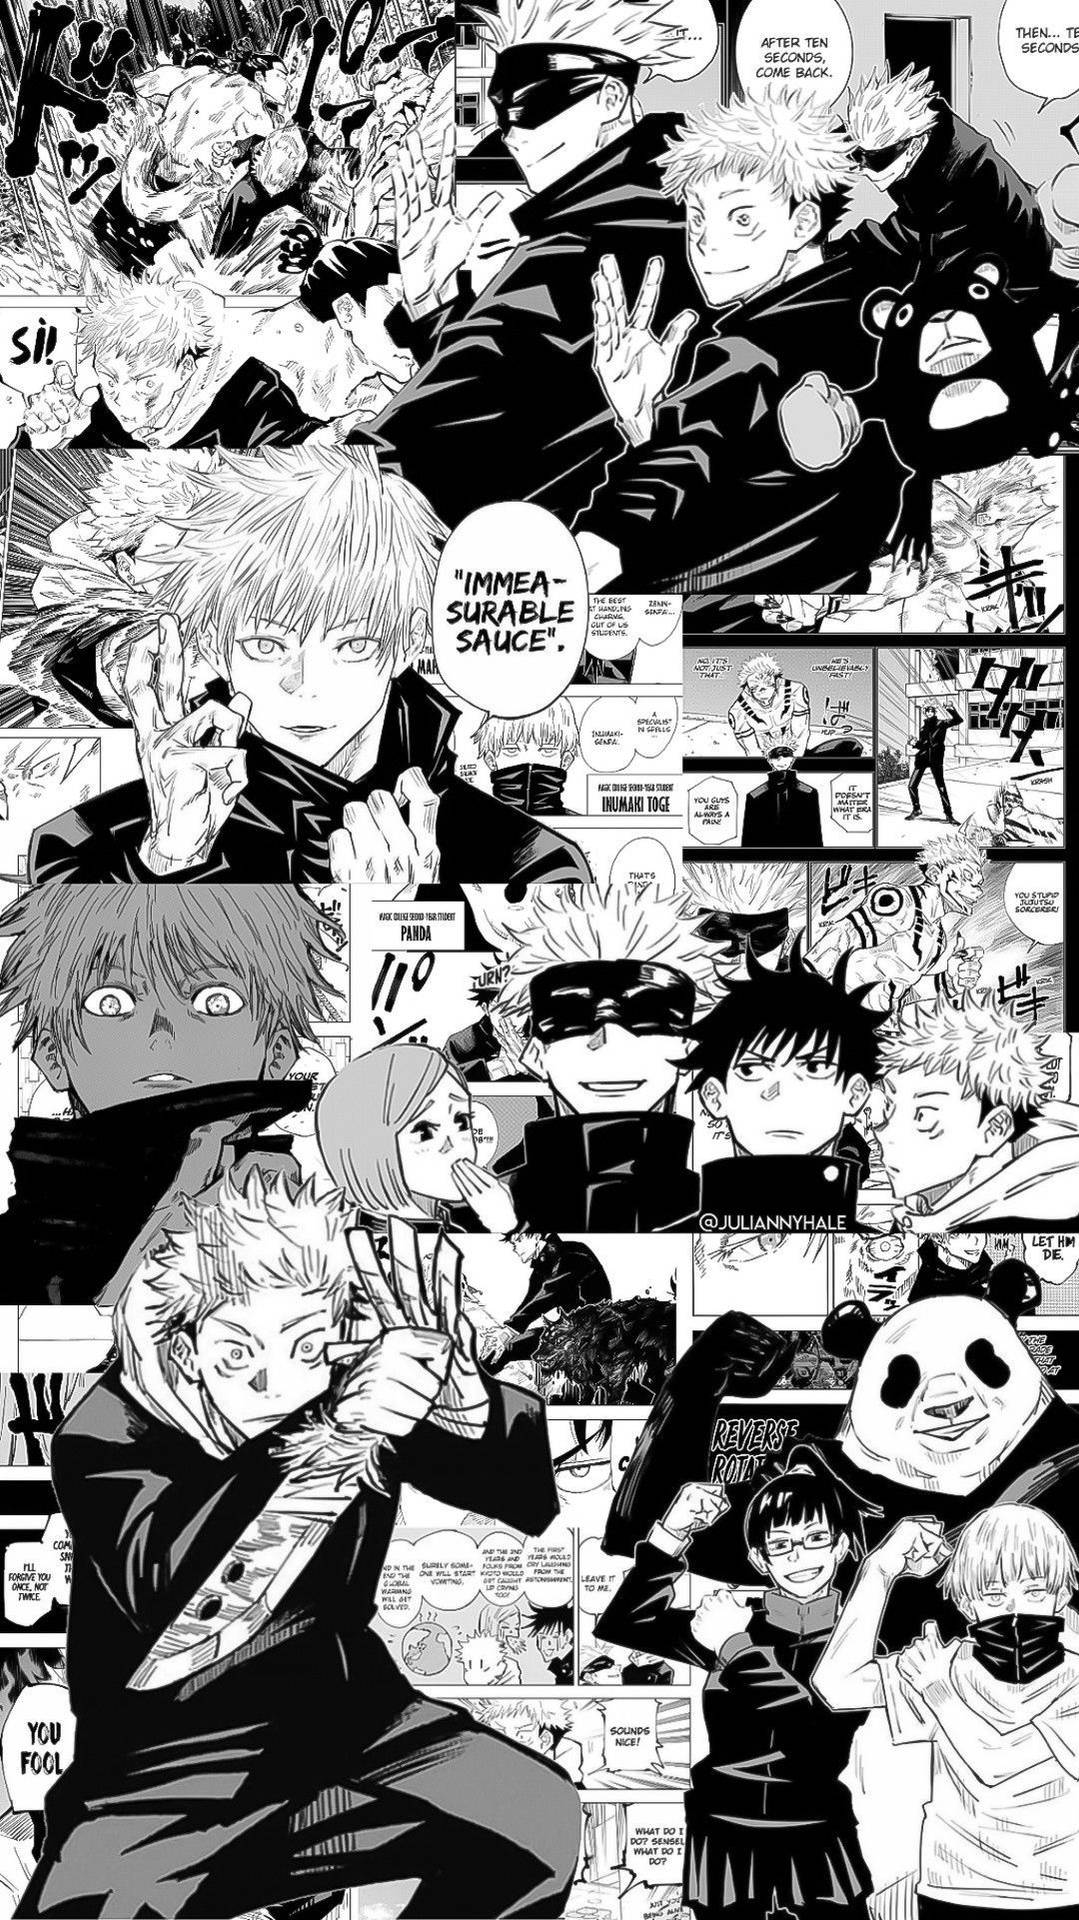 Download Jujutsu Kaisen Black And White Manga Wallpaper 